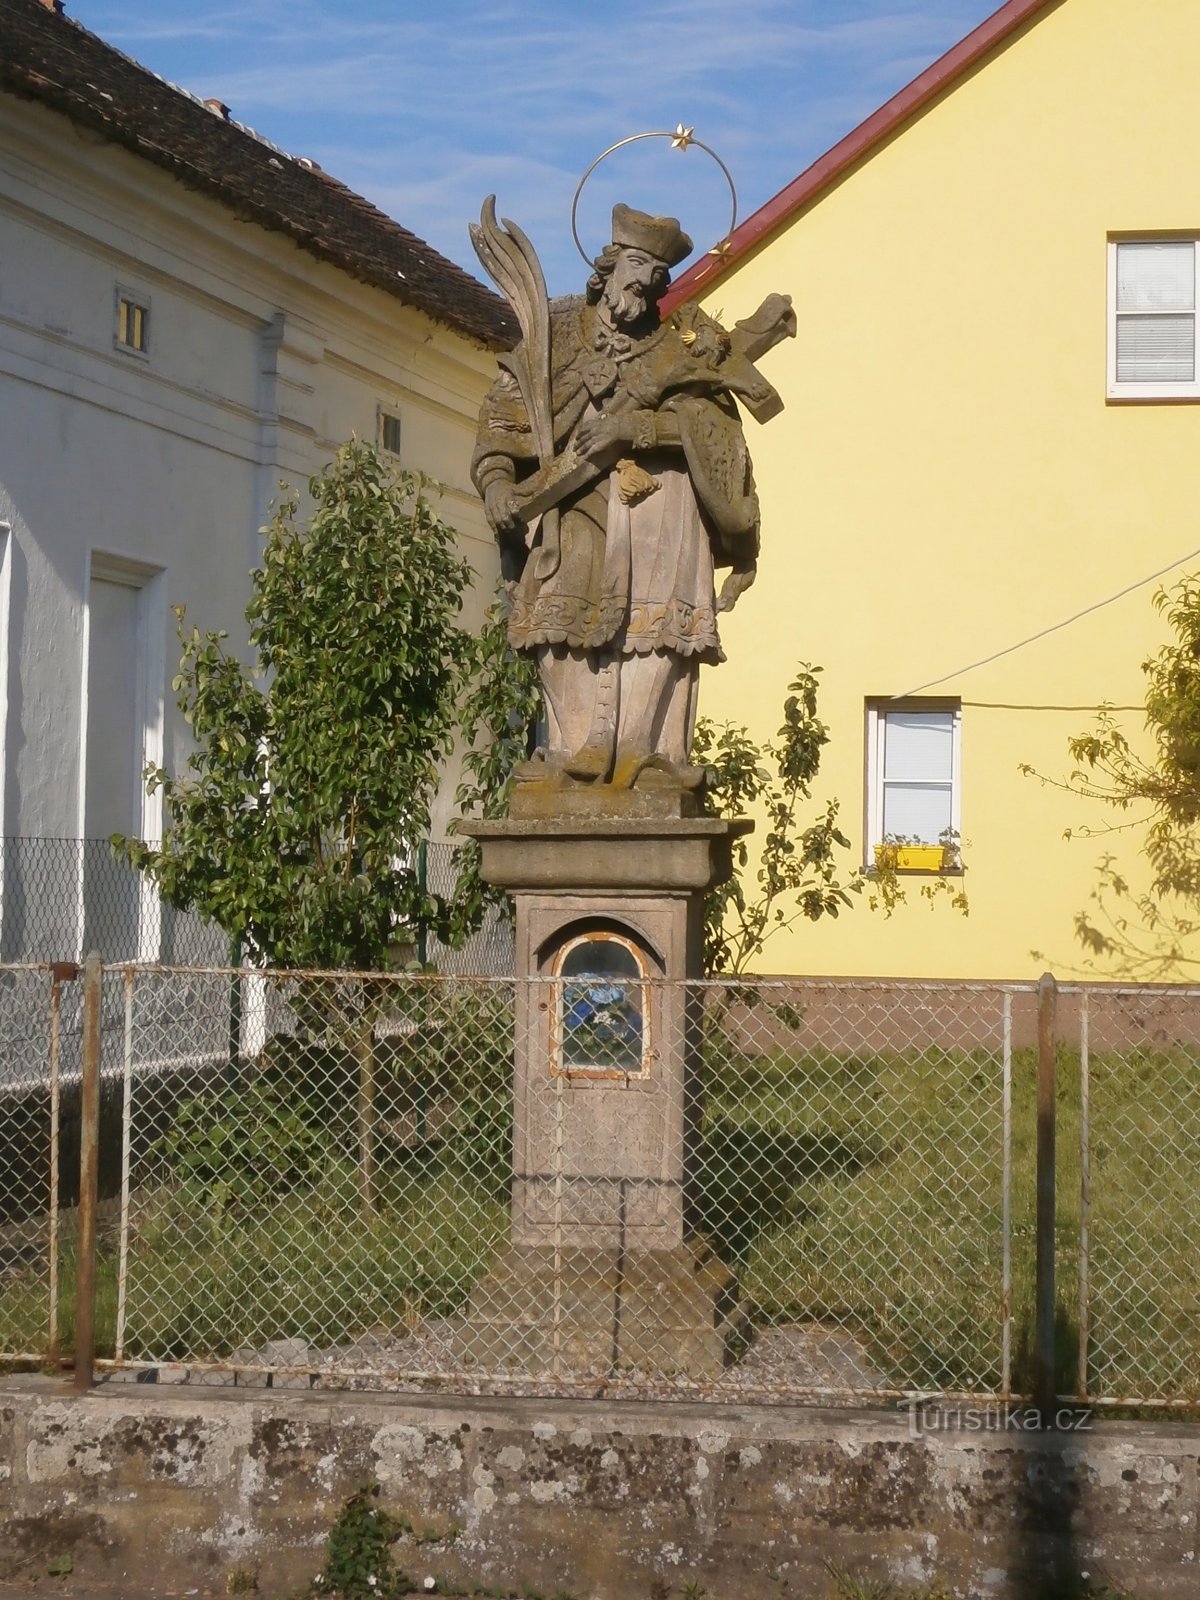 Staty av St. Jan Nepomucký på nr 38 (Černožice, 11.6.2017/XNUMX/XNUMX)